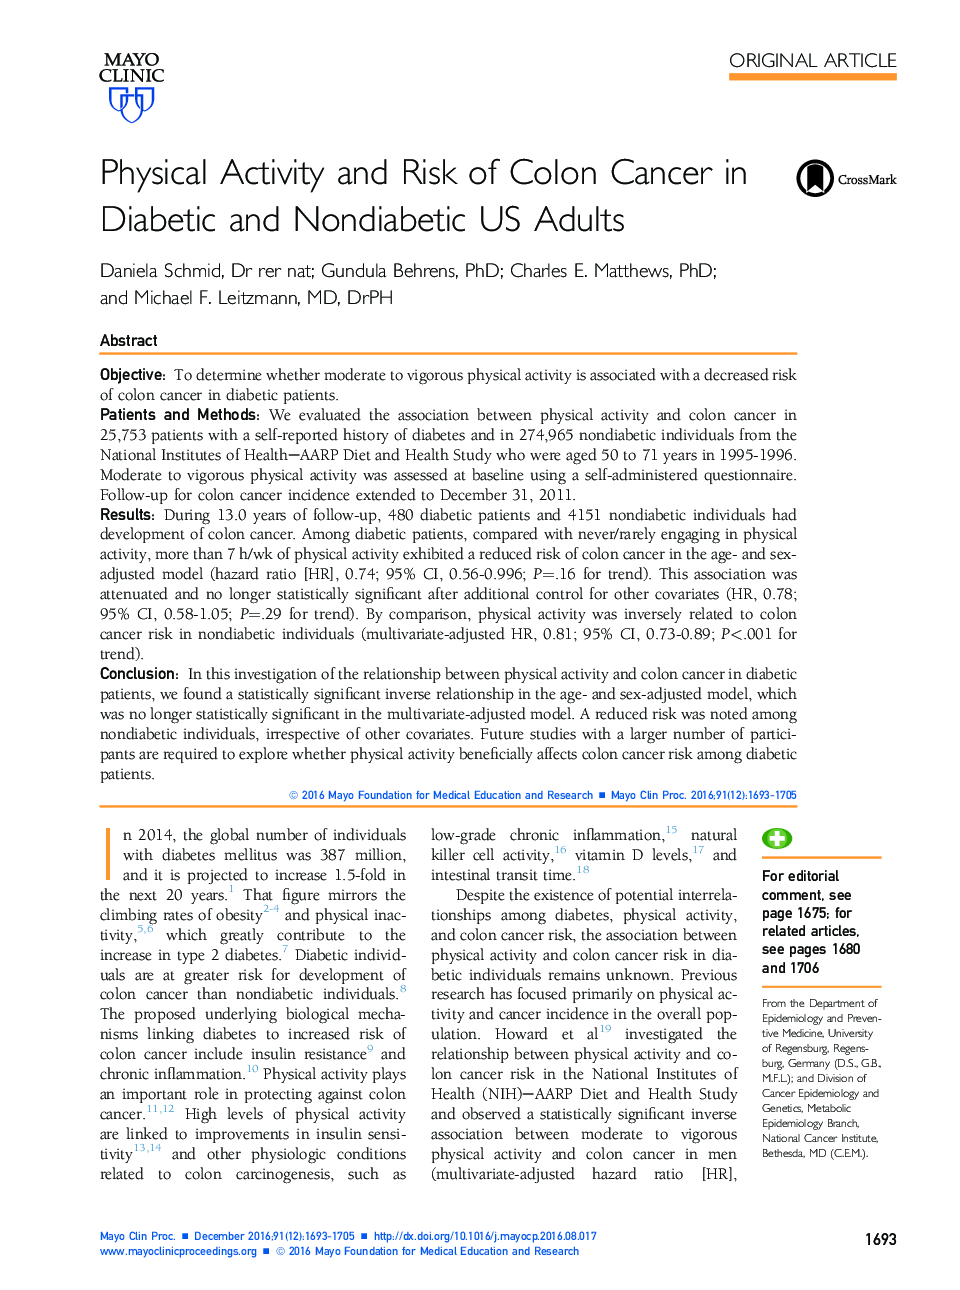 فعالیت بدنی و خطر ابتلا به سرطان کولون در بزرگسالان دیابتی و غیردیابی ایالات متحده 